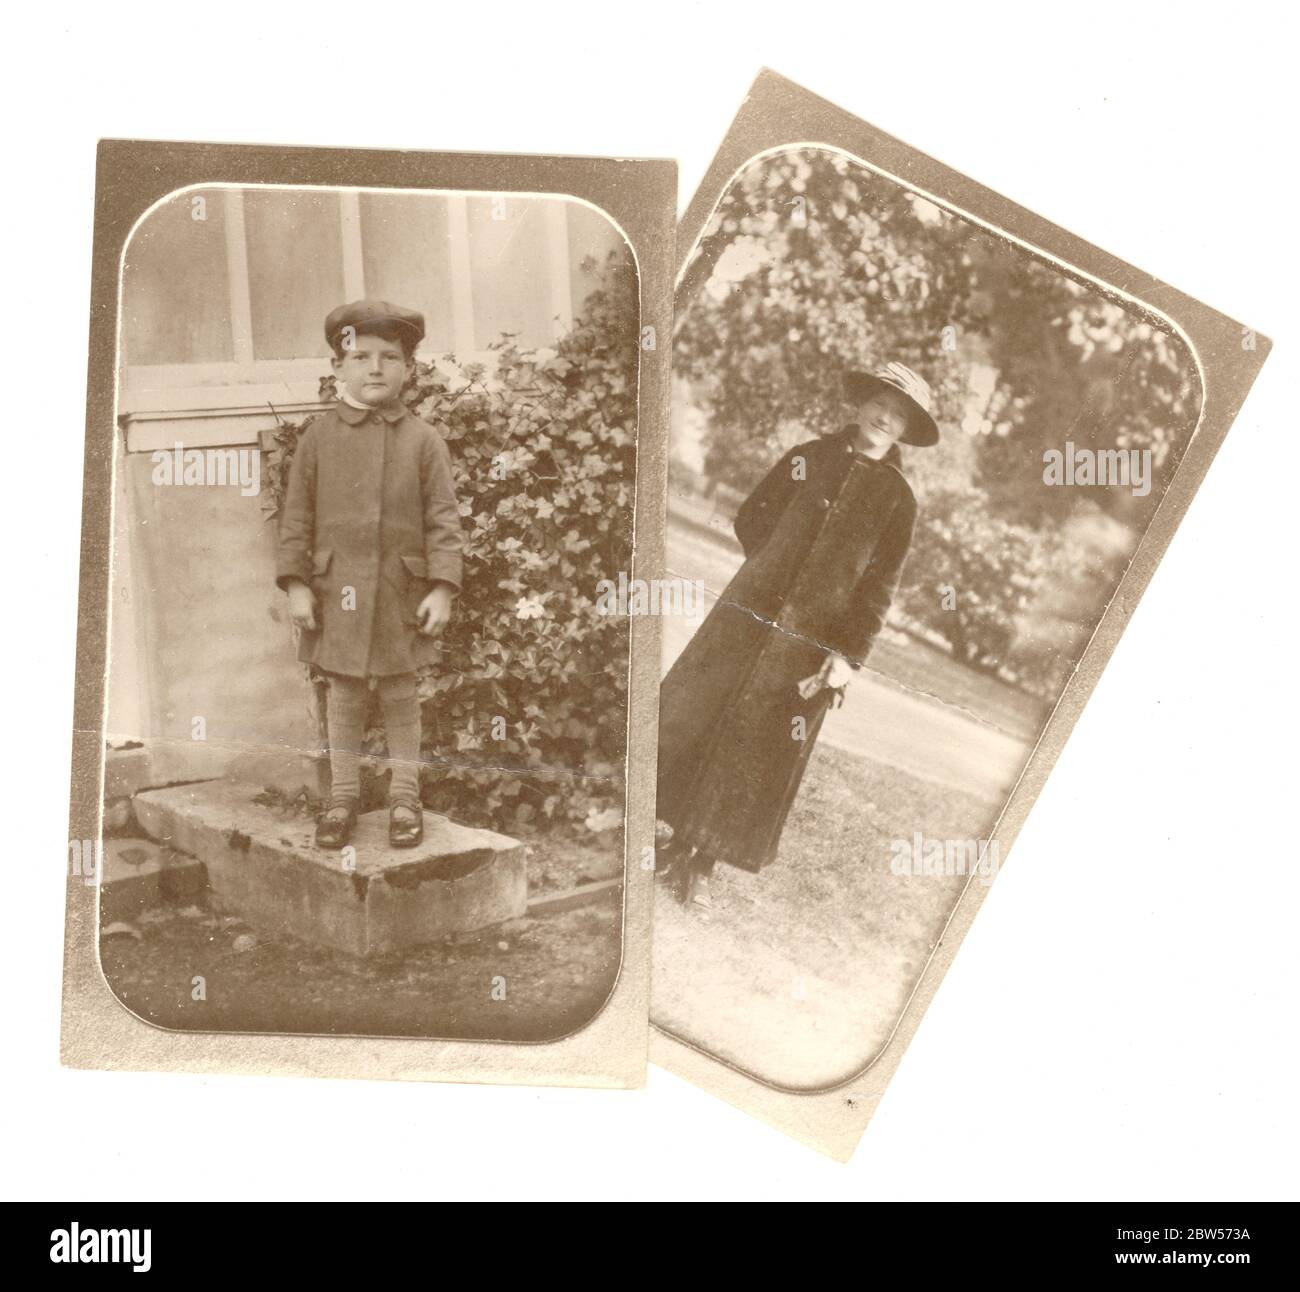 Anfang des 20. Jahrhunderts Kopie eines edwardianischen Foto aus einem Fotoalbum, das eine Frau in einem langen Mantel und einen kleinen Jungen mit einer Mütze zeigt, im Freien stehend, Originalfoto ist um 1910, Großbritannien Stockfoto